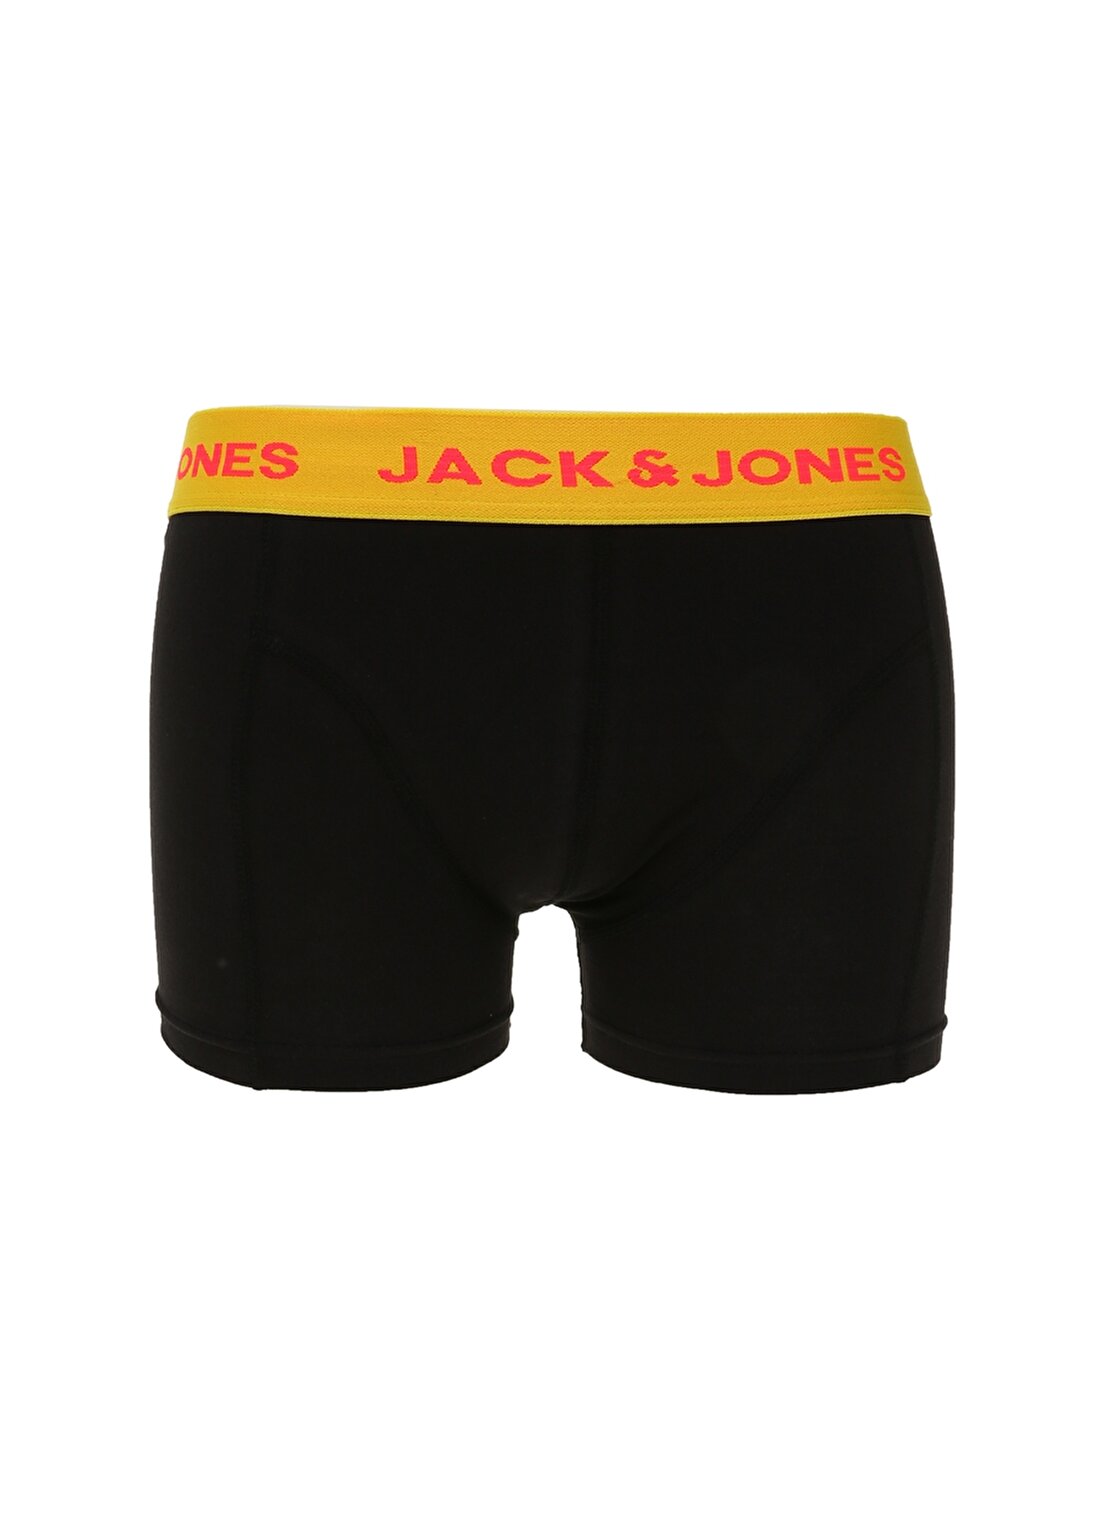 Jack & Jones 12196487_Jacnıo Trunks Try Açık Siyah Baskılı Boxer